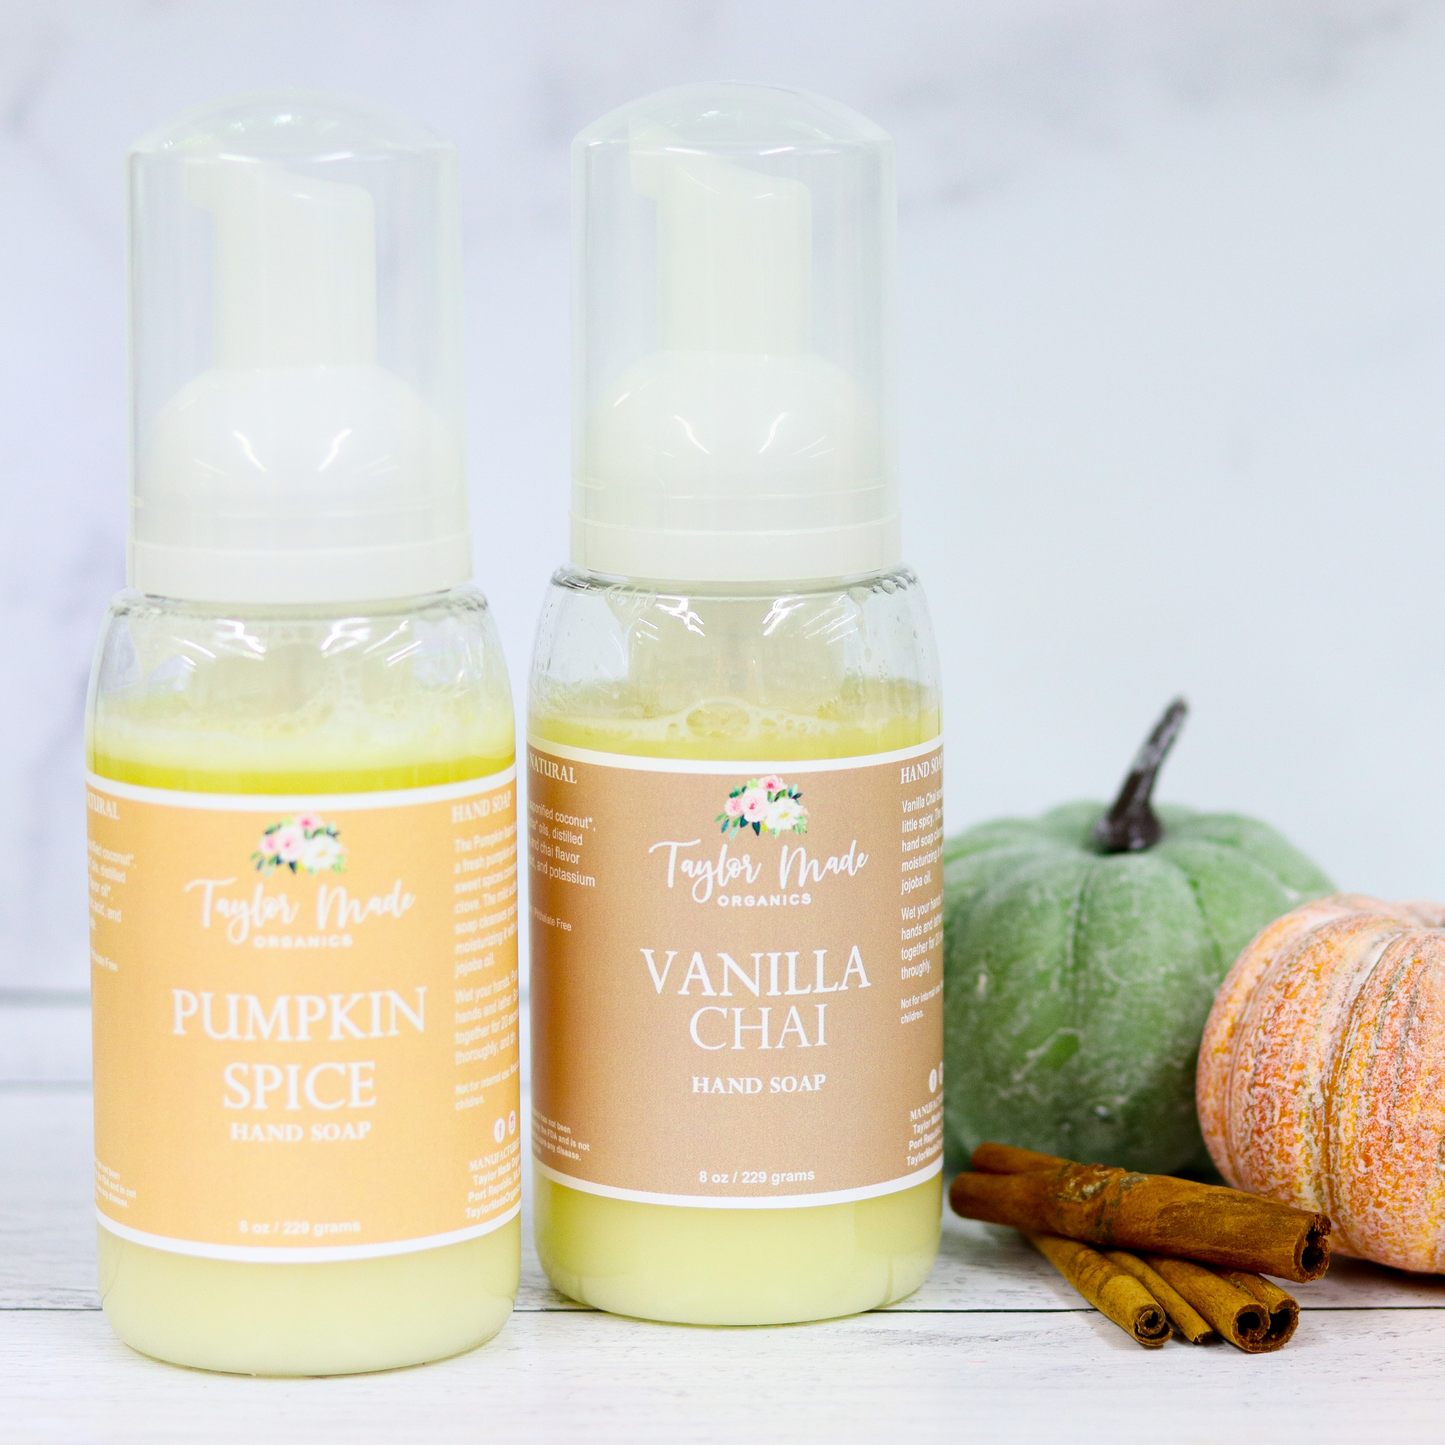 Pumpkin Spice and Vanilla Chai Hand Soap